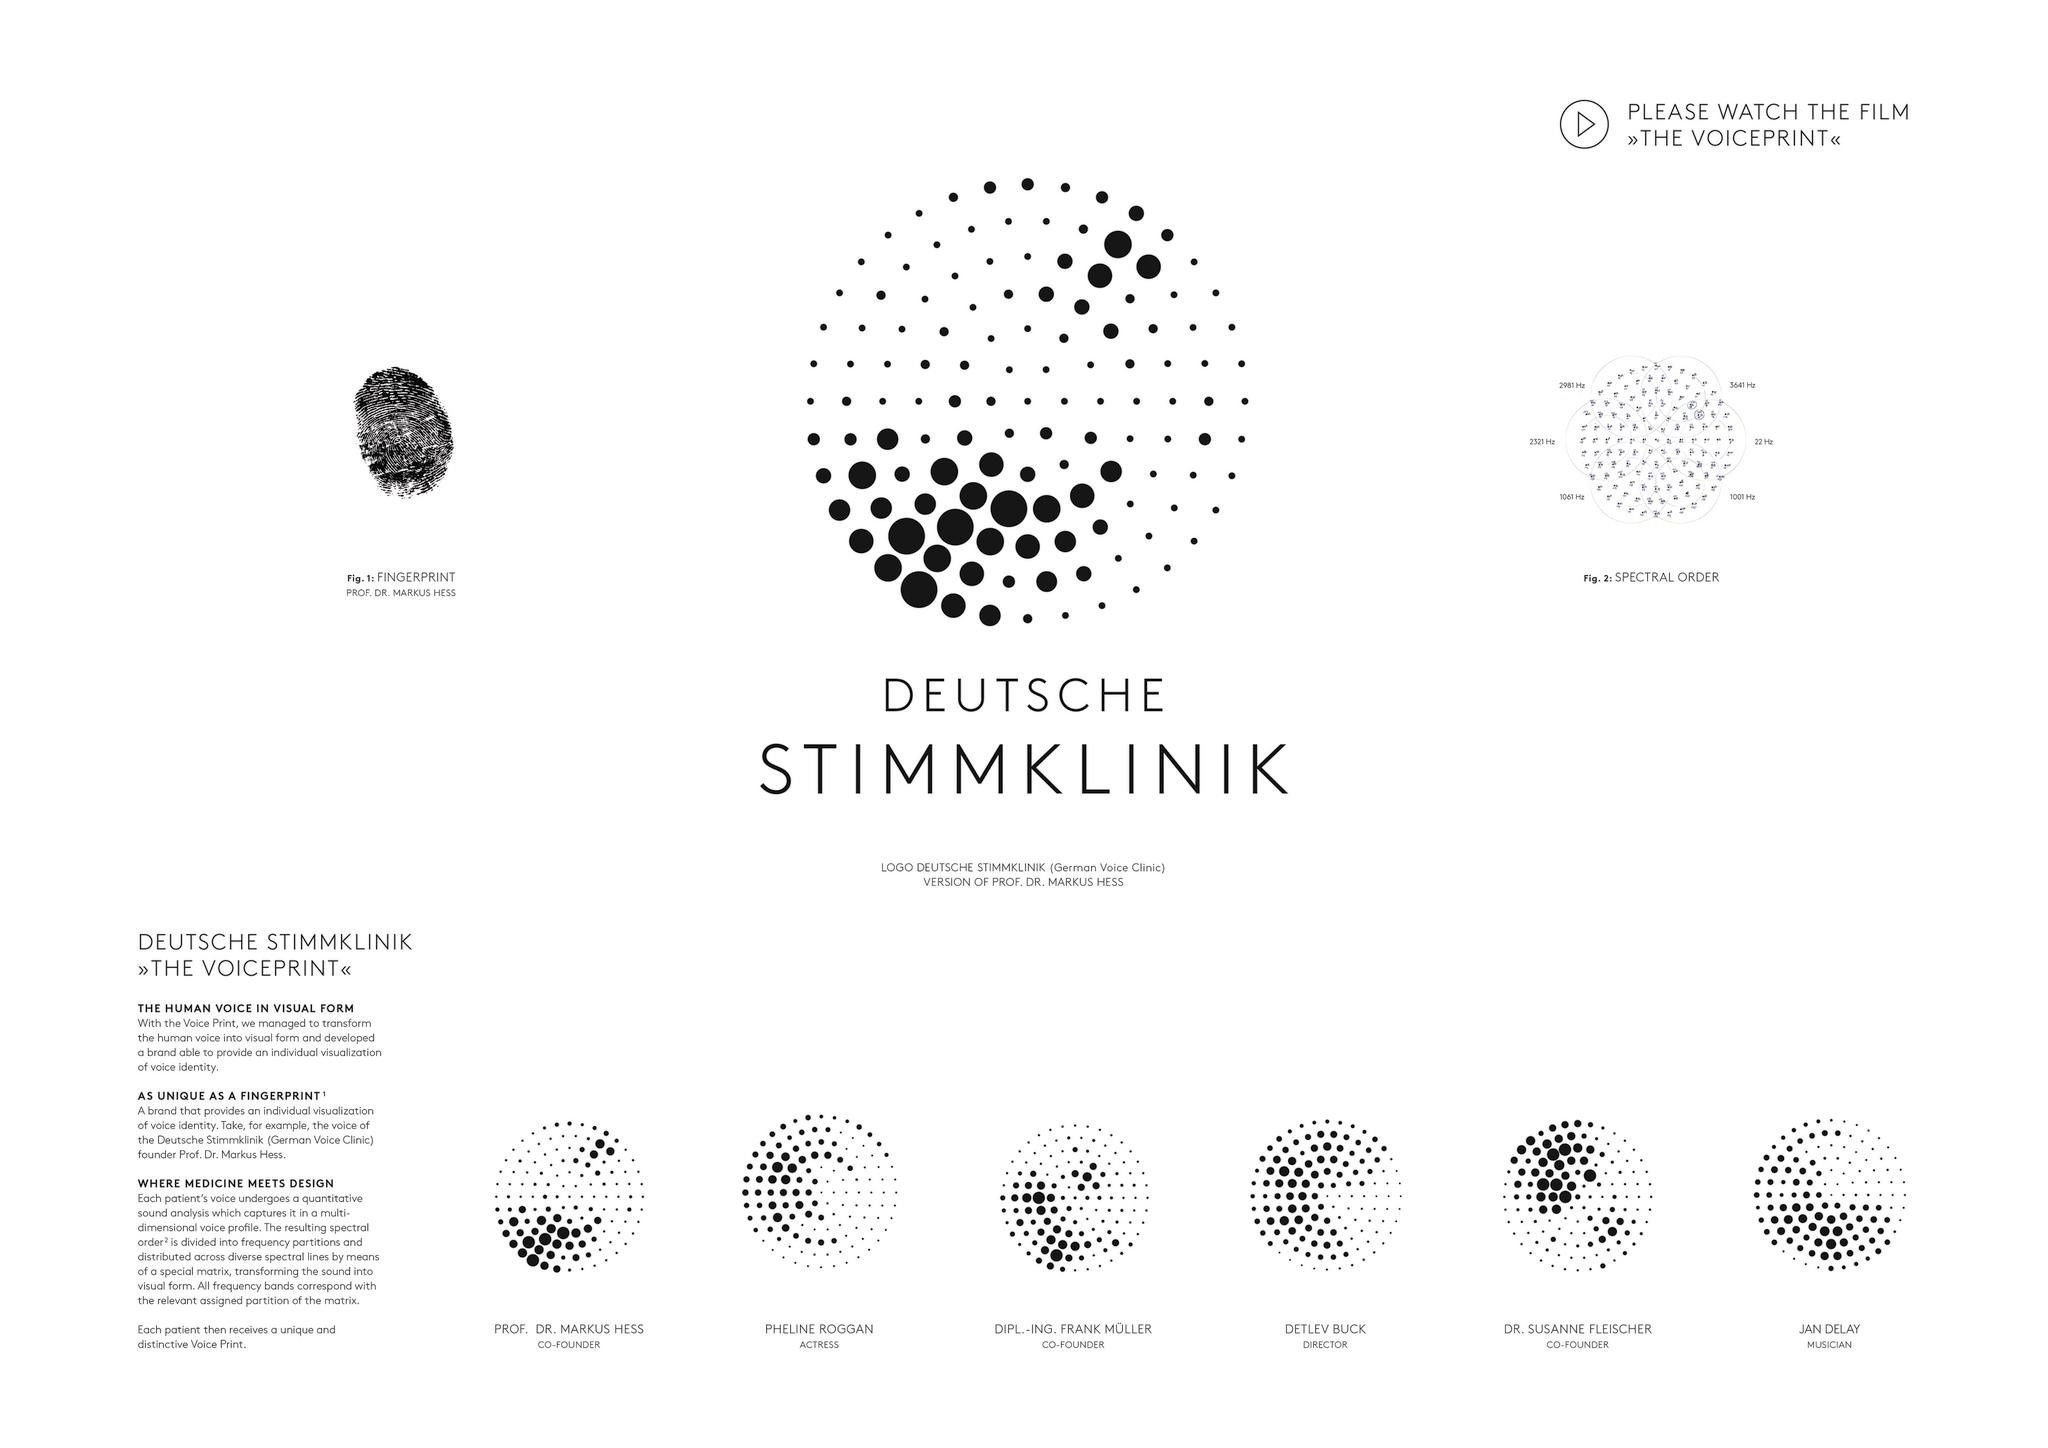 DEUTSCHE STIMMKLINIK – THE VOICEPRINT.